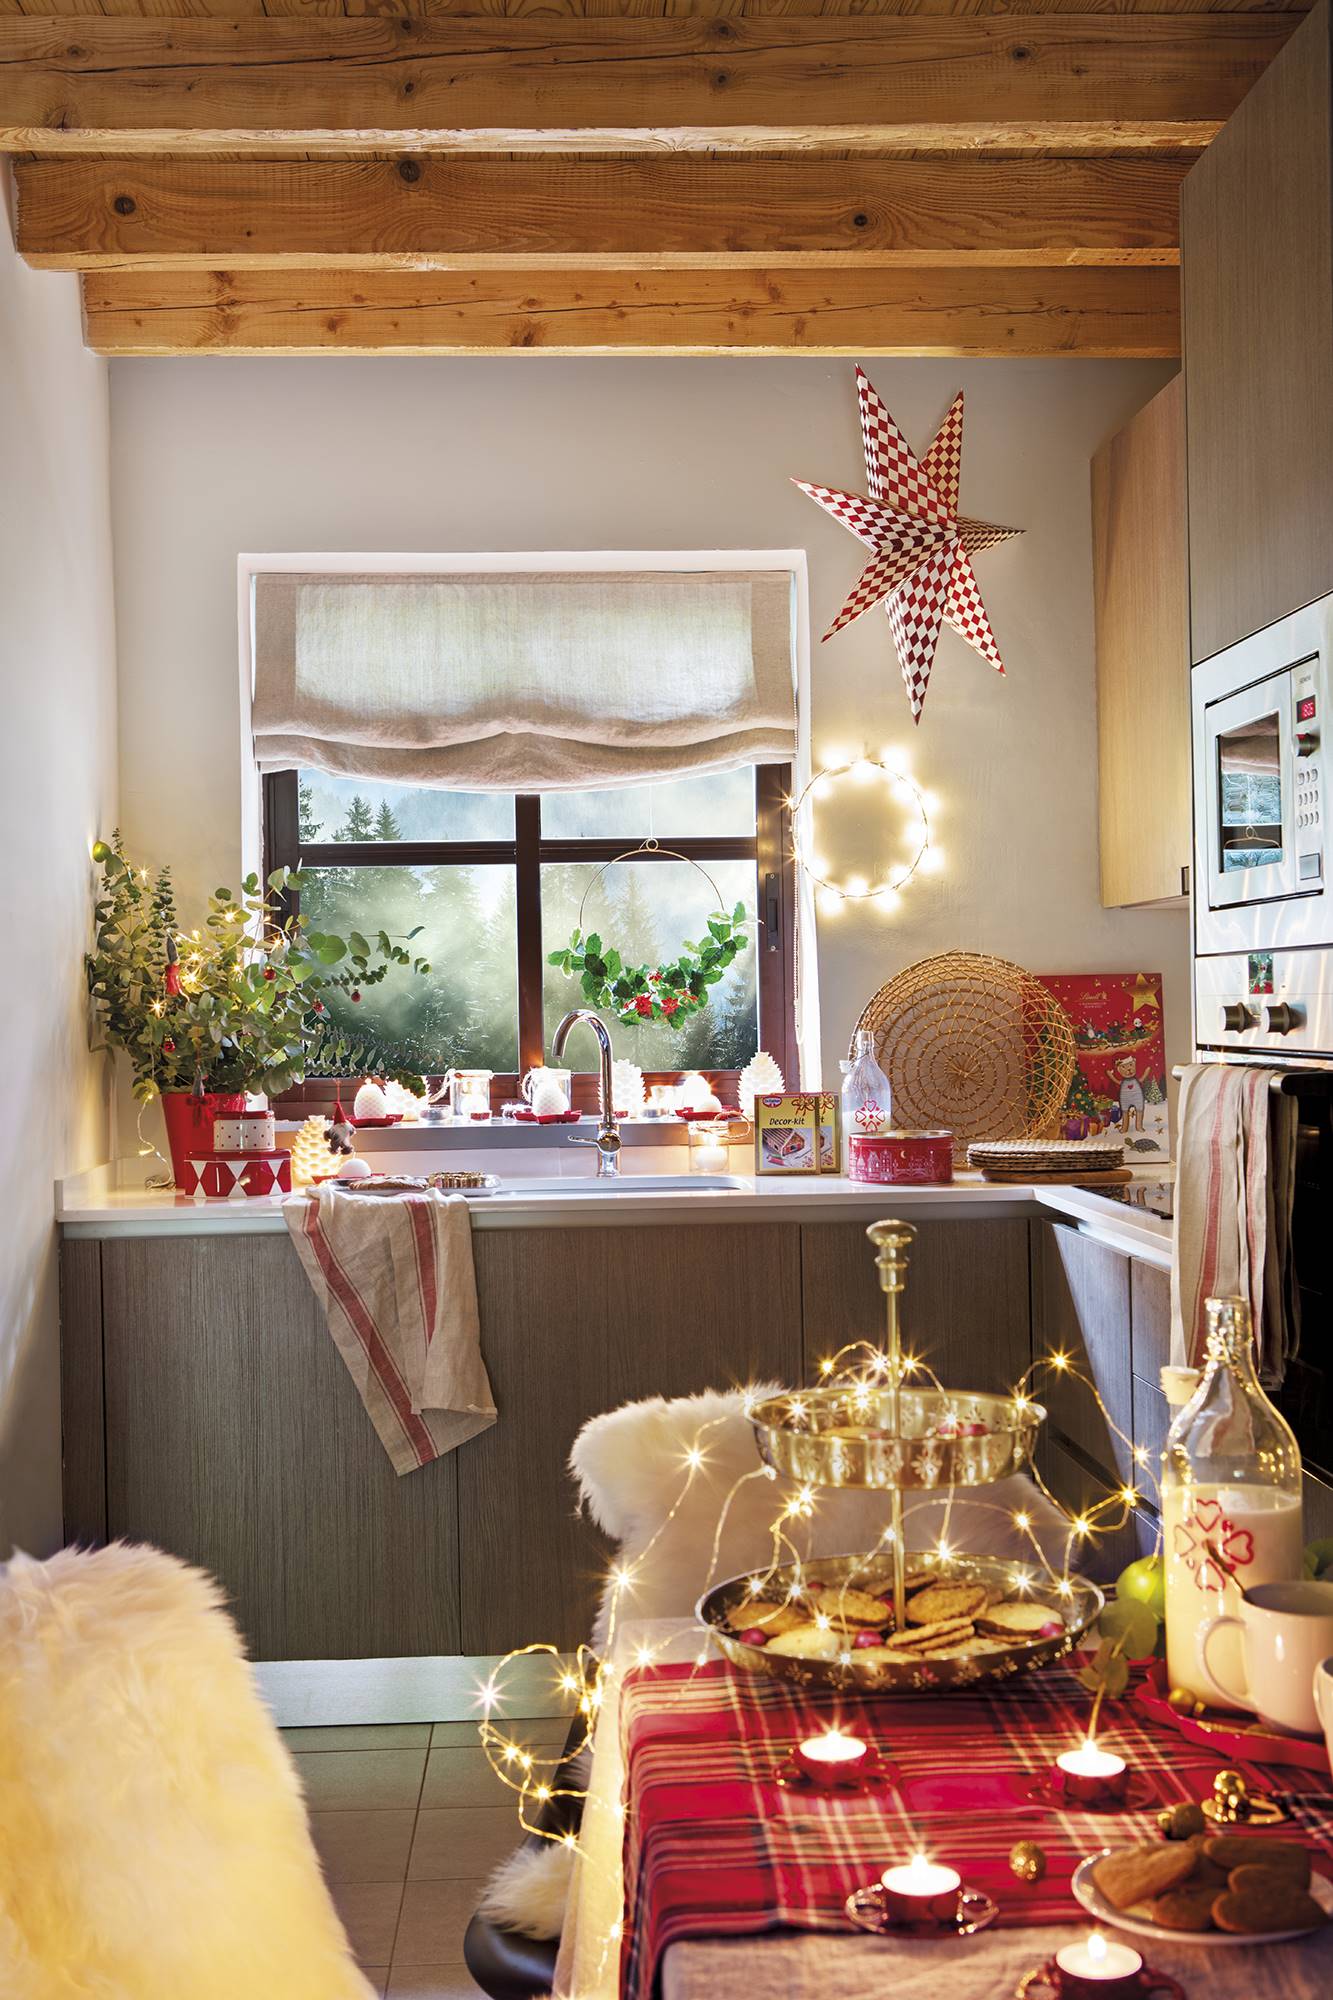 Cocina pequeña decorada por Navidad. 